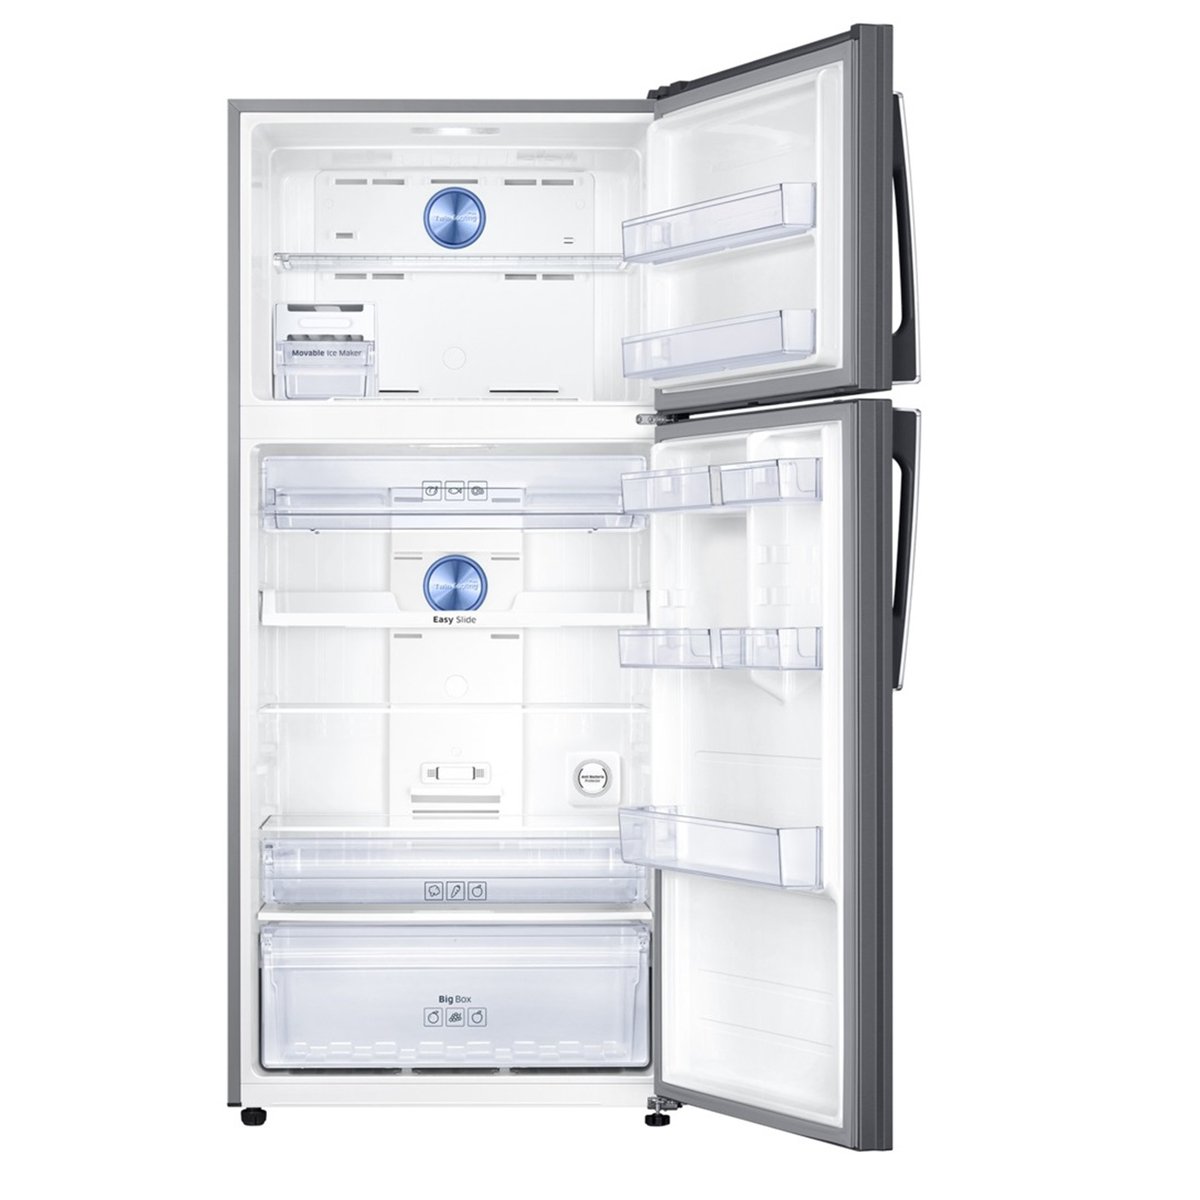 Samsung Double Door Refrigerator RT72K6357SL 500L